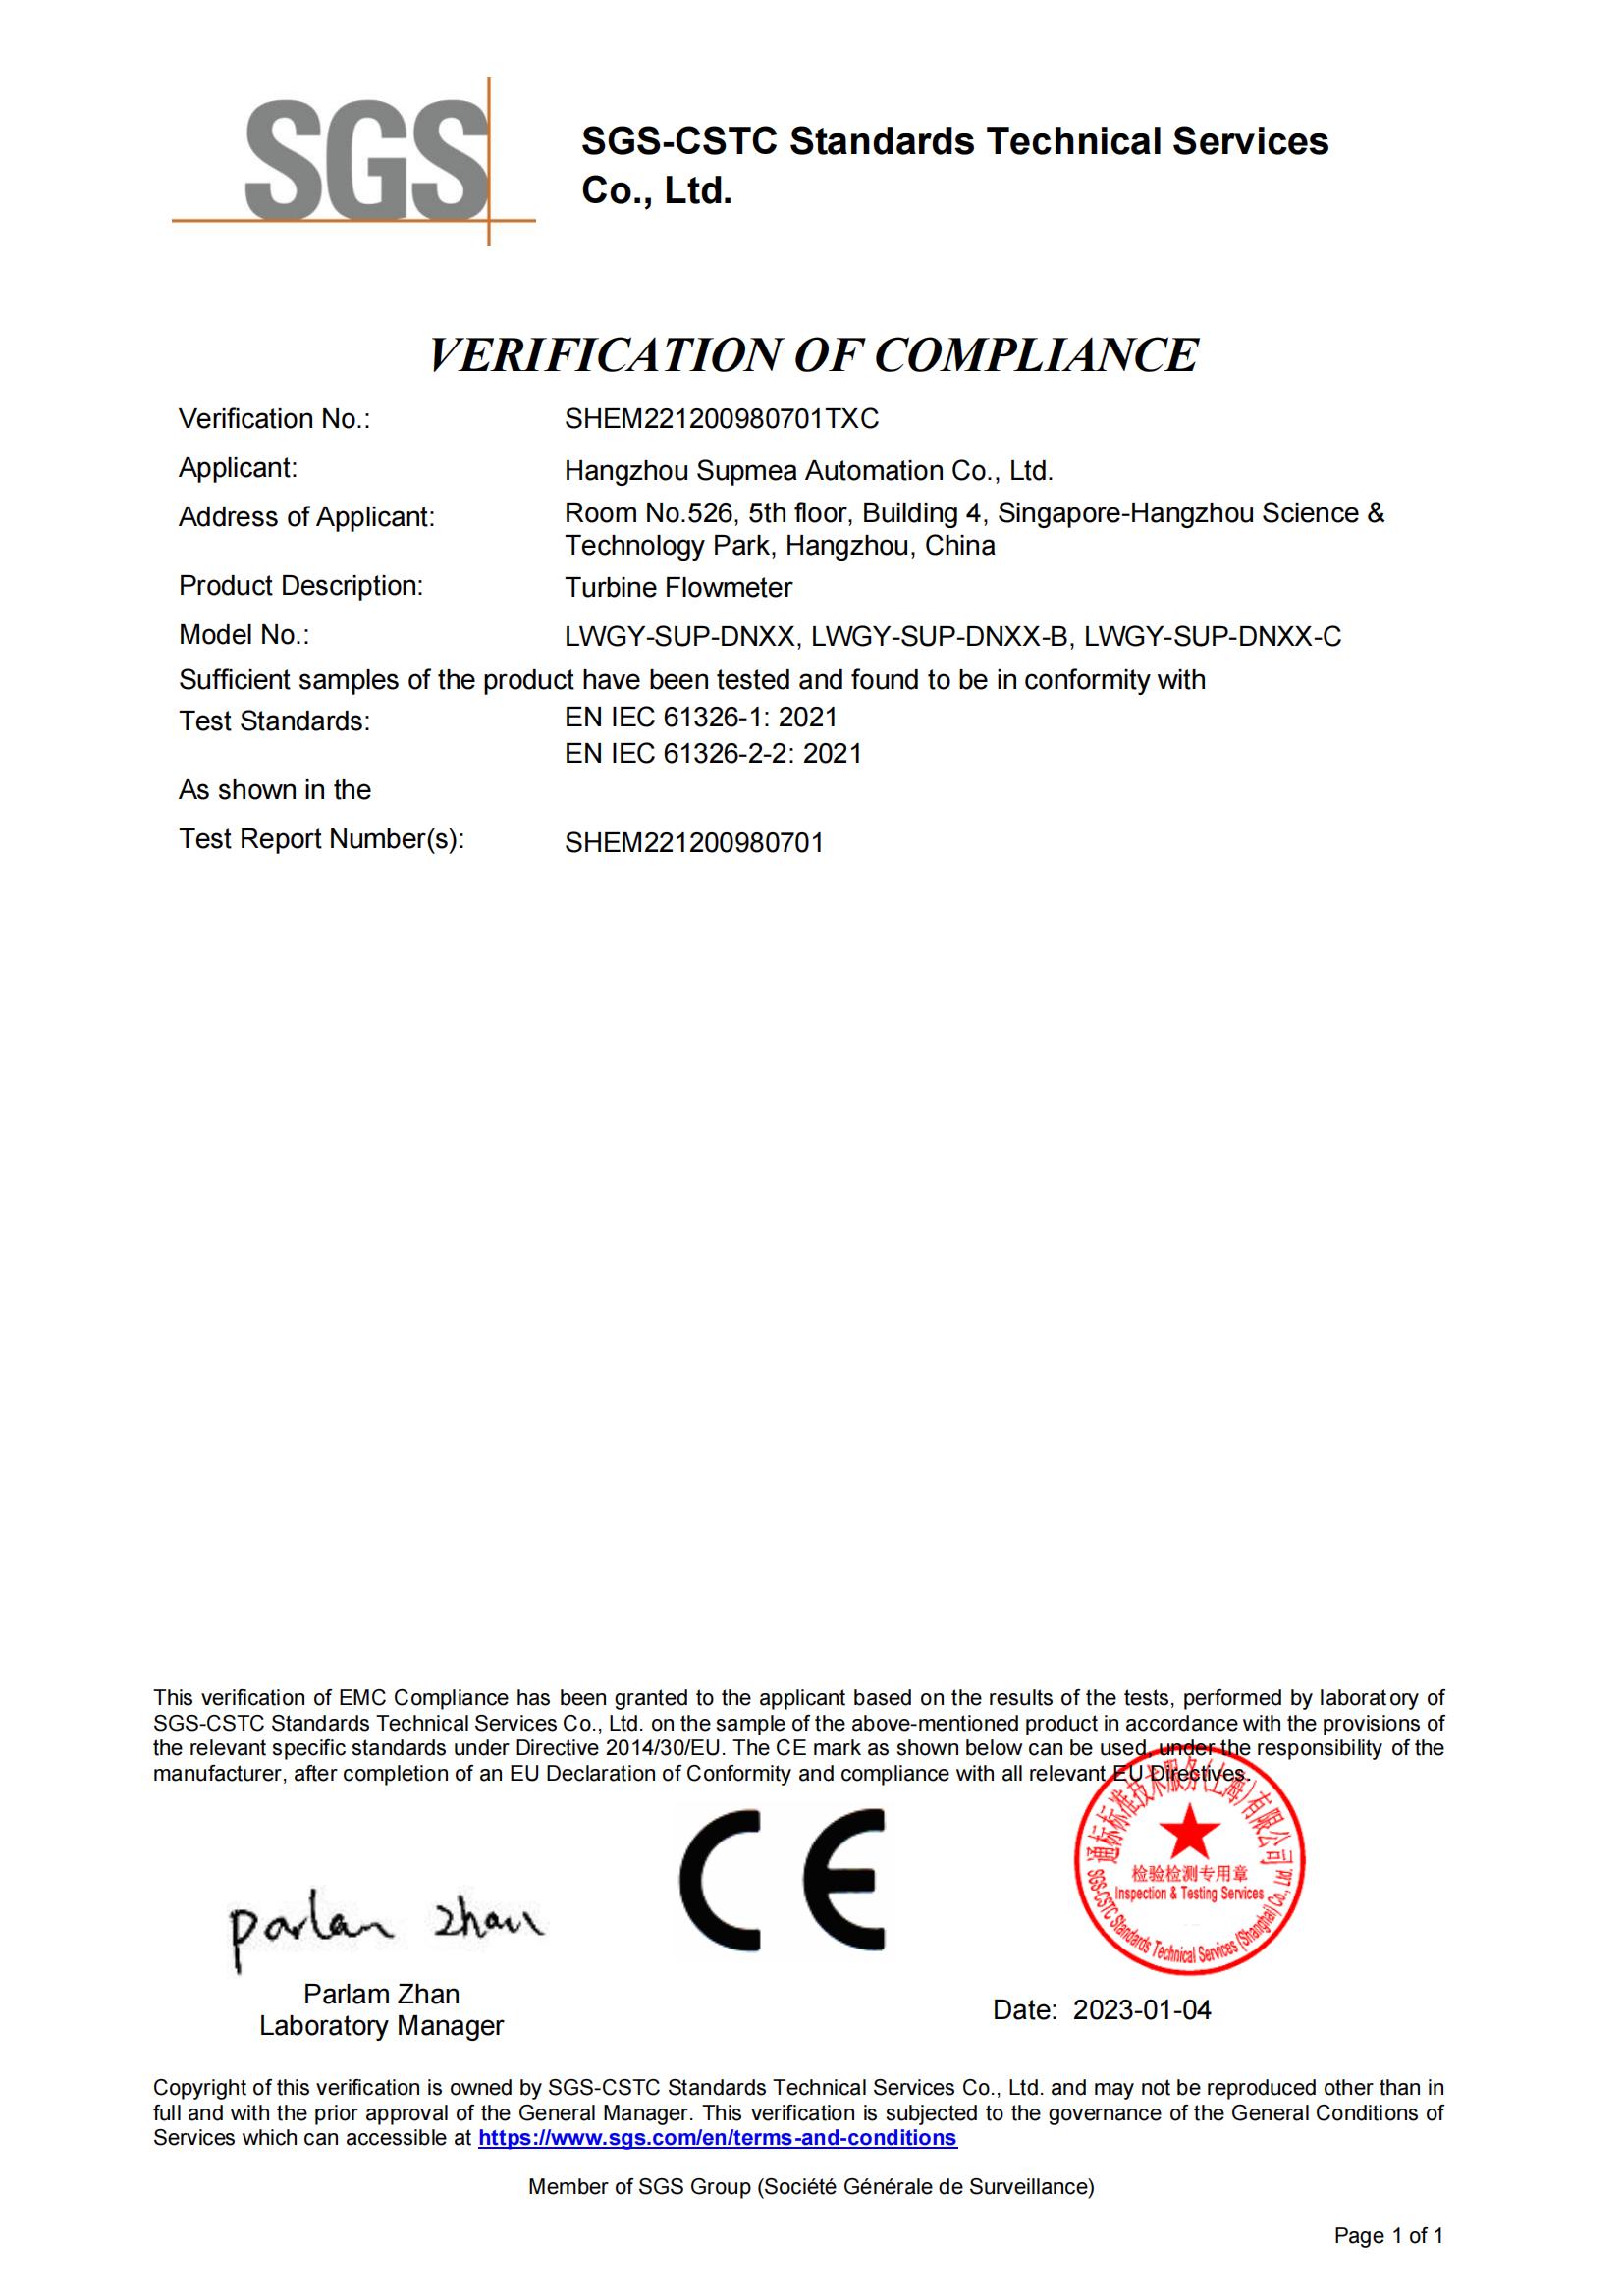 CE certificate (SGS) - turbine flowmeter